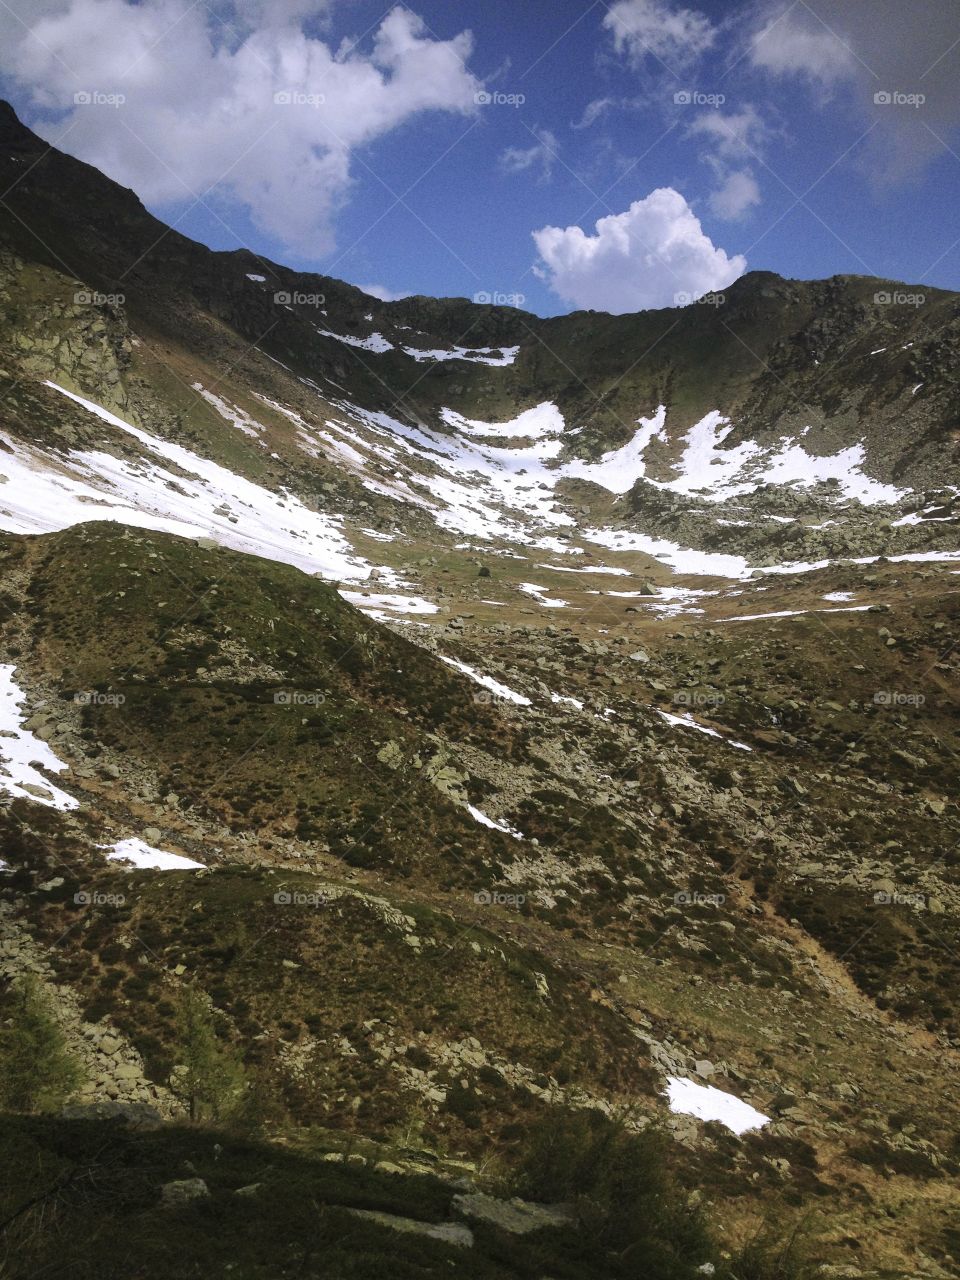 vallata parzialmente innevata della cima della montagna riaffiorano erba e rocce.
Partially snow covered valley in the top of the mountain resurface grass and rocks.